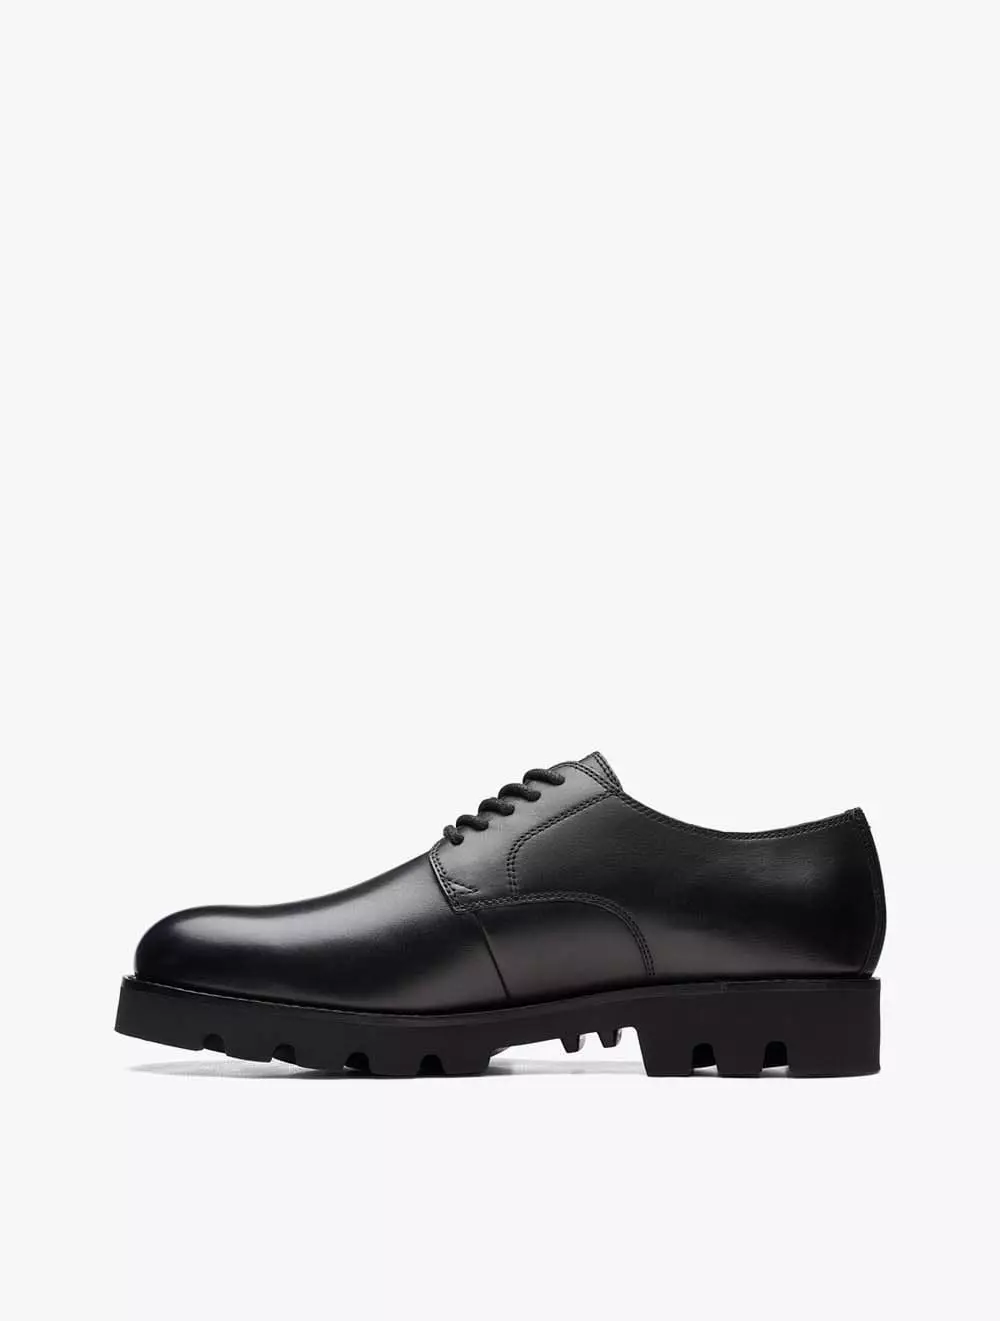 Jual Clarks Clarks Badell Walk Men's Loafers- Black Leather Original ...